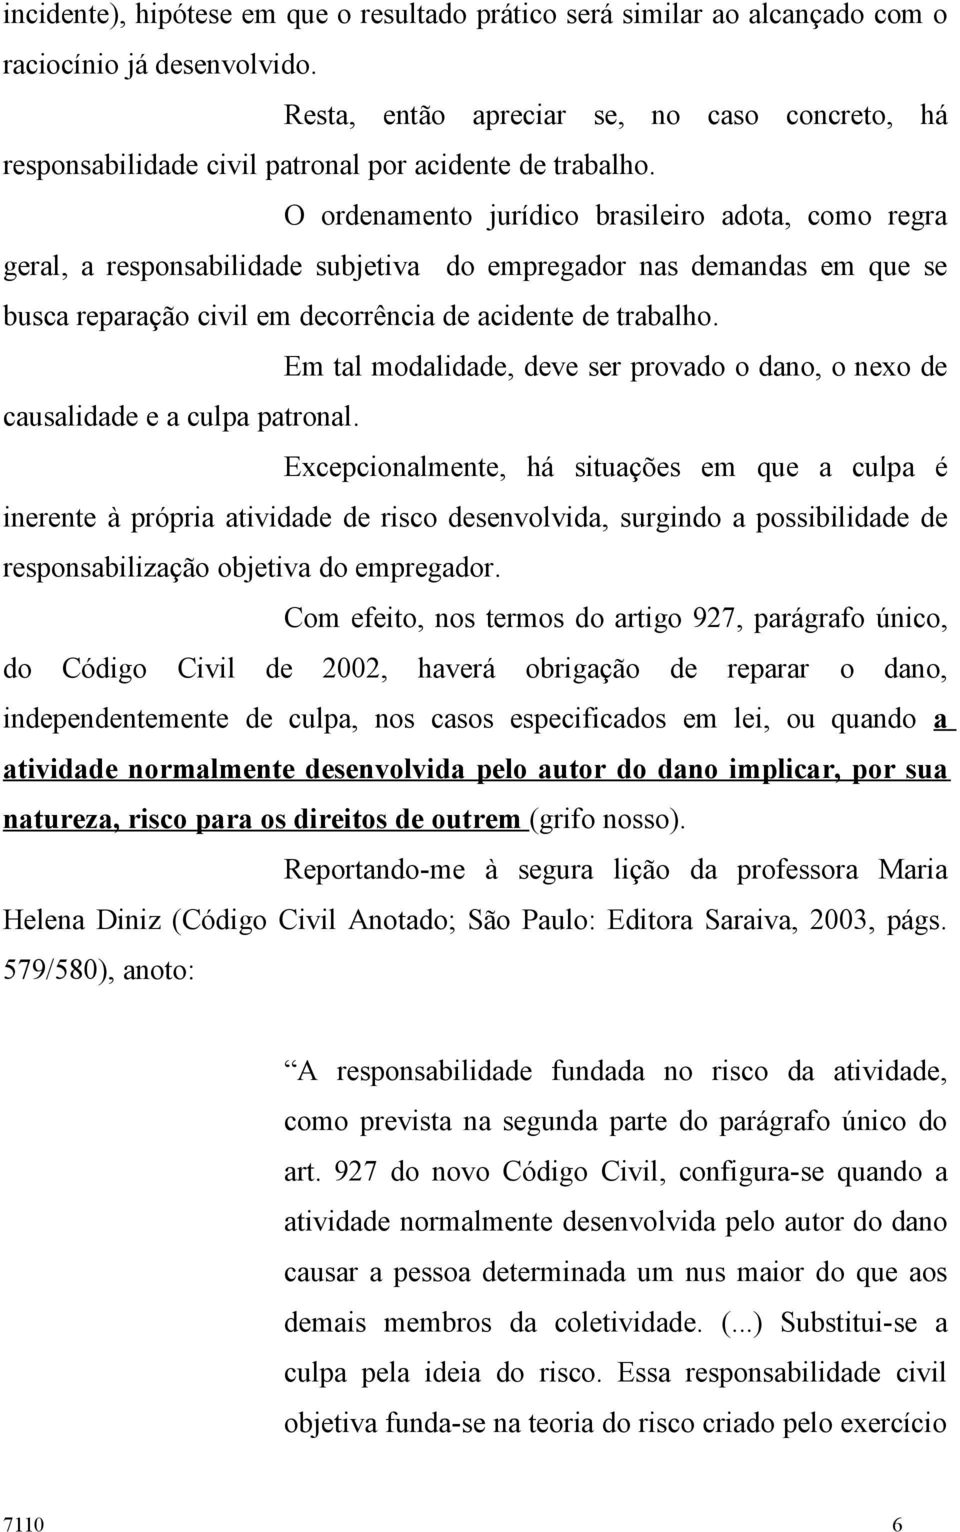 O ordenamento jurídico brasileiro adota, como regra geral, a responsabilidade subjetiva do empregador nas demandas em que se busca reparação civil em decorrência de acidente de trabalho.